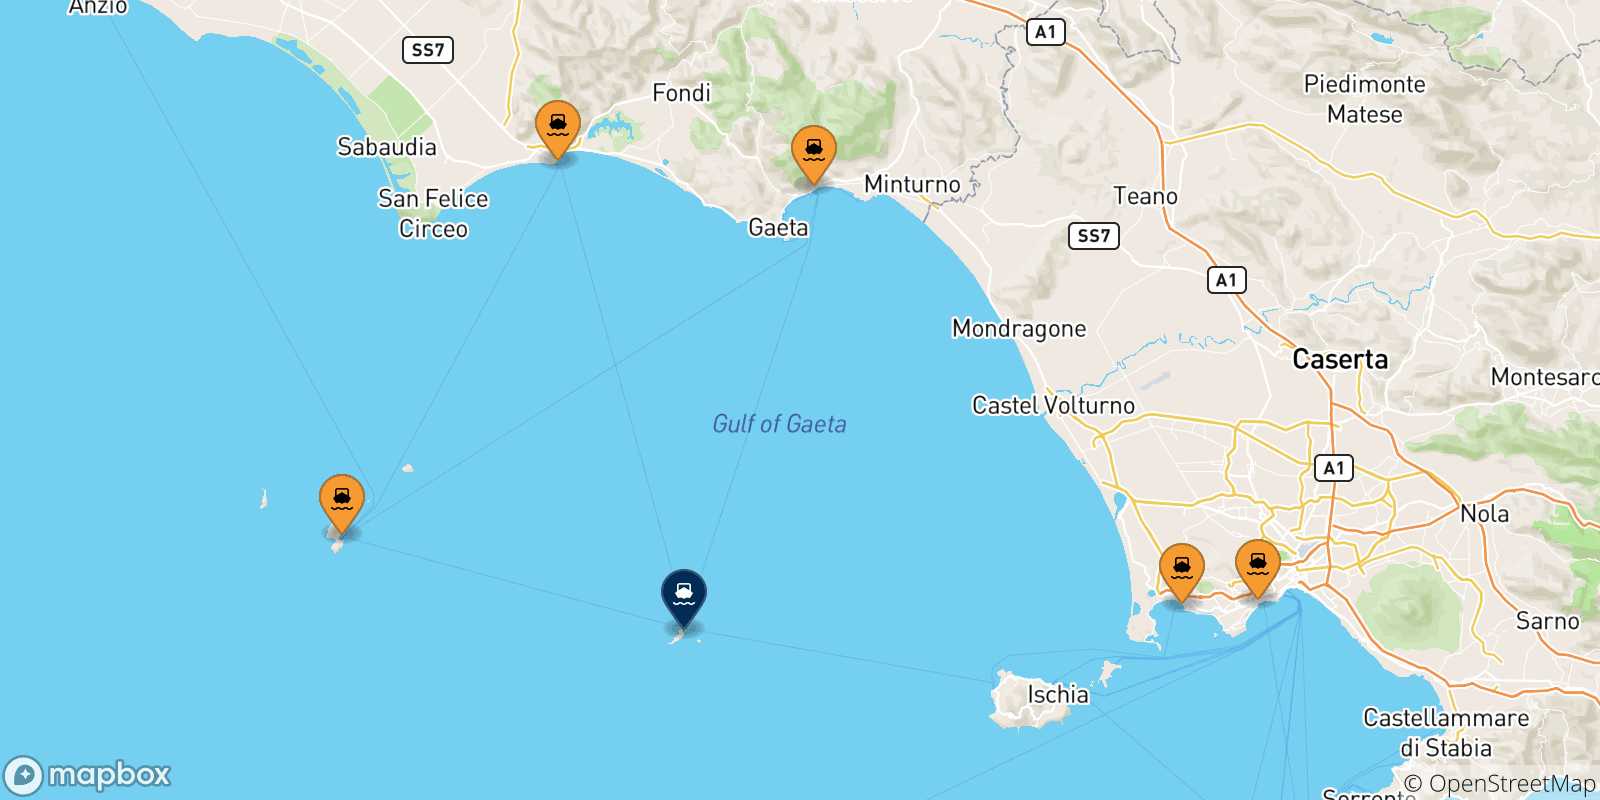 Mappa delle possibili rotte tra l'Italia e Ventotene